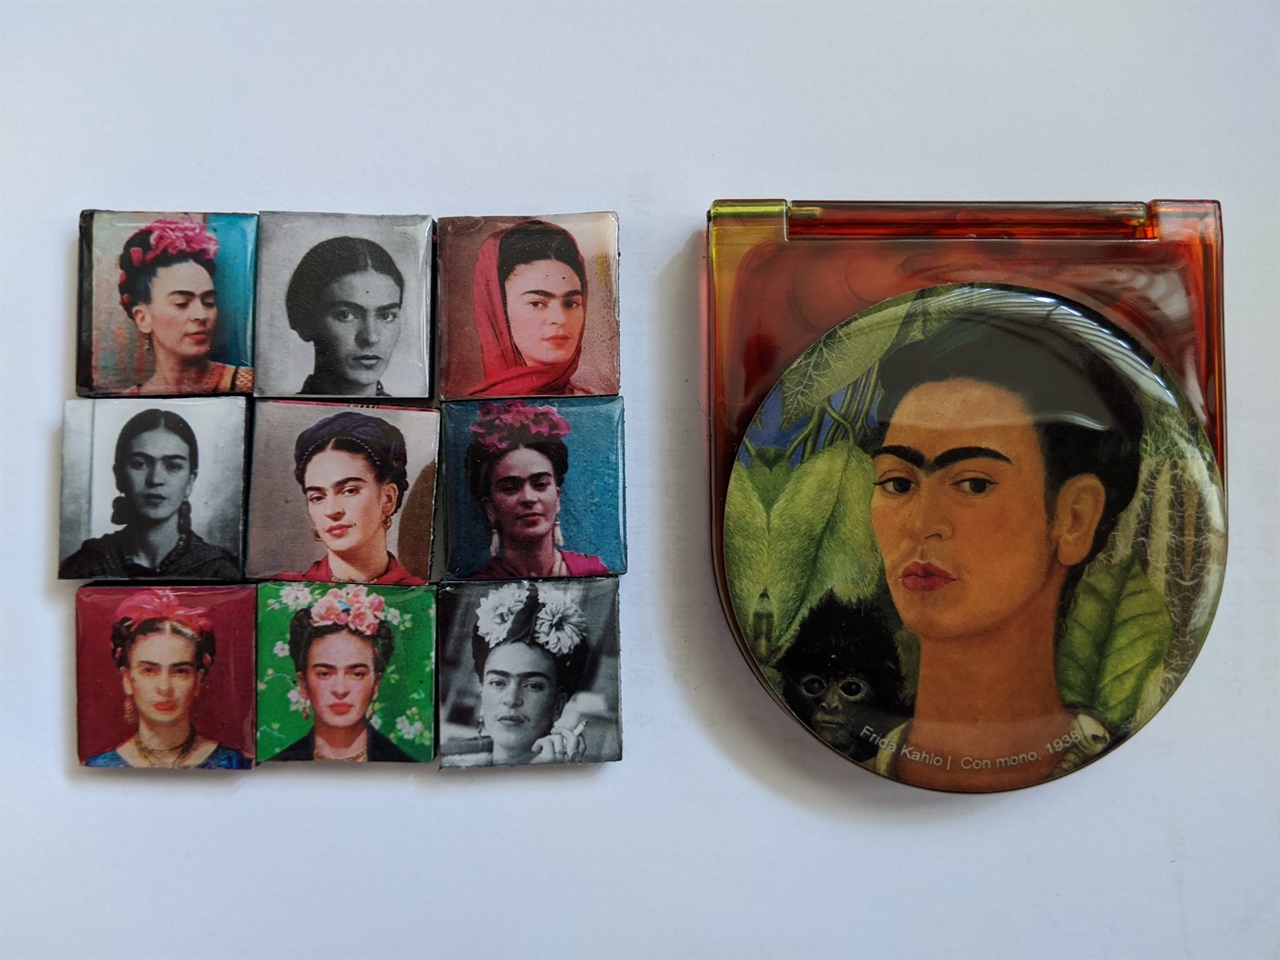 프리다 칼로 박물관에서 구입한 기념품 기념품으로 구입한 자석과 휴대용 거울에는 프리다의 얼굴이 가득하다.